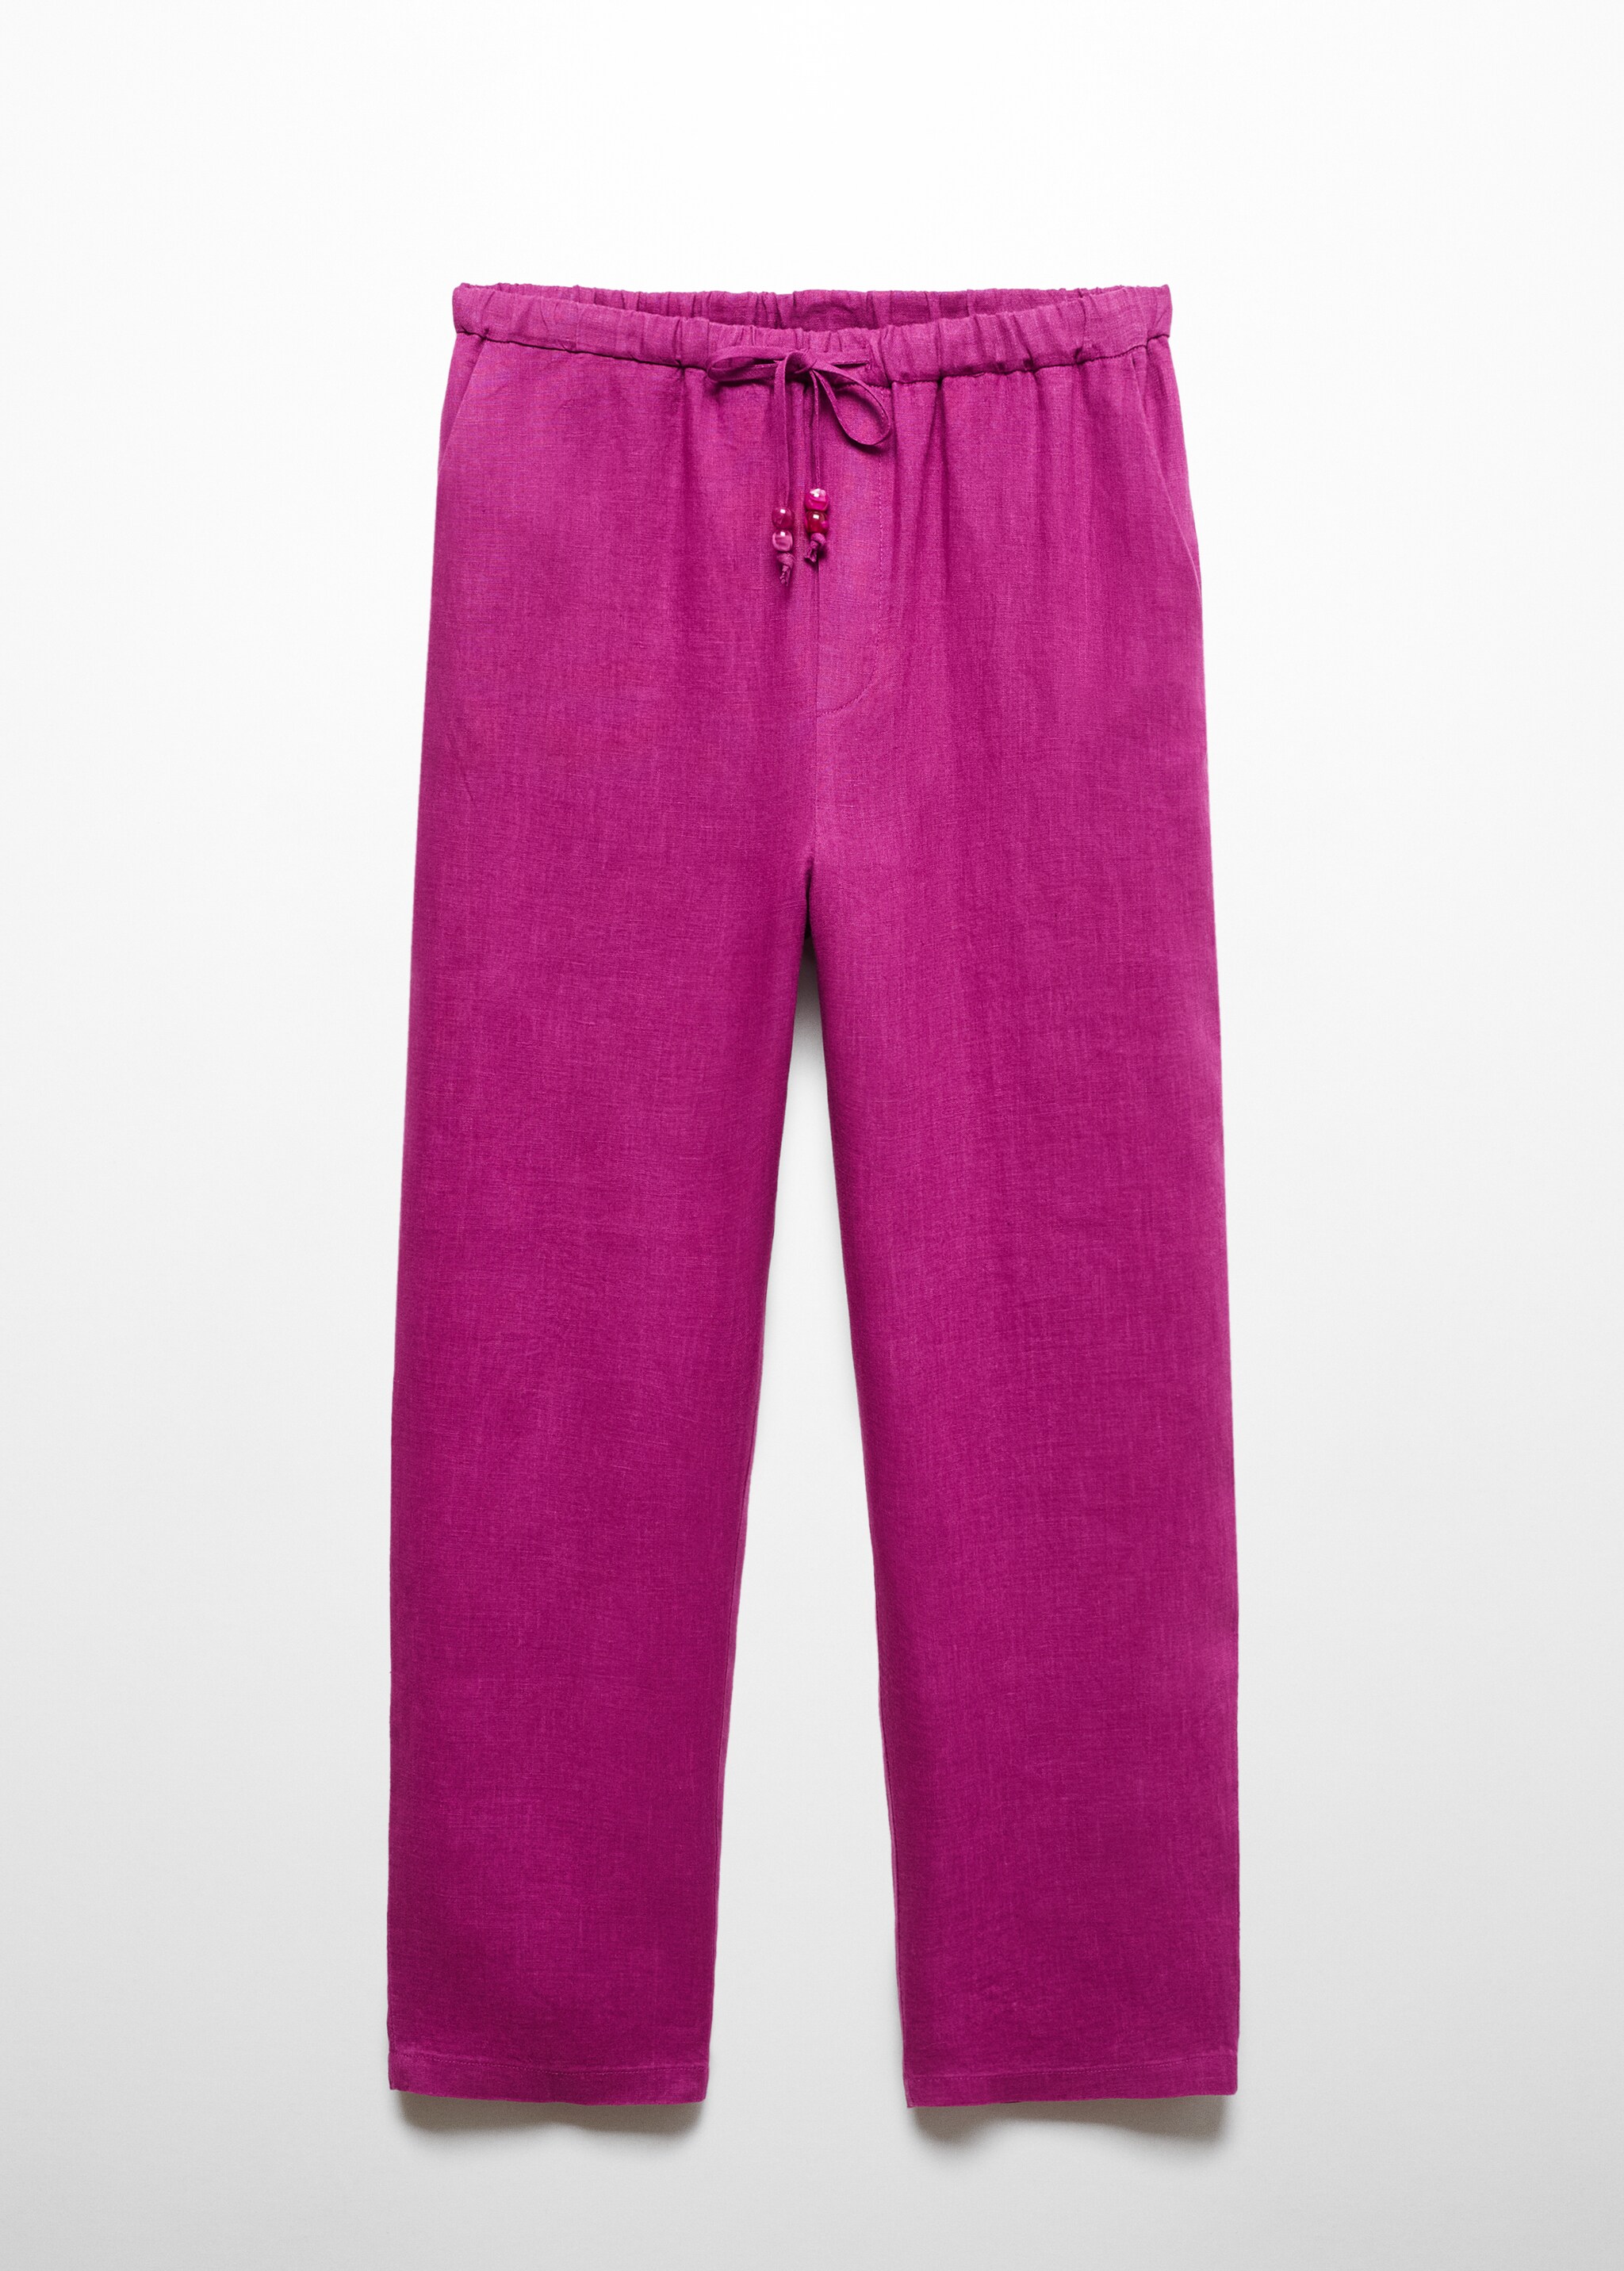 Pantaloni 100% lino - Articolo senza modello